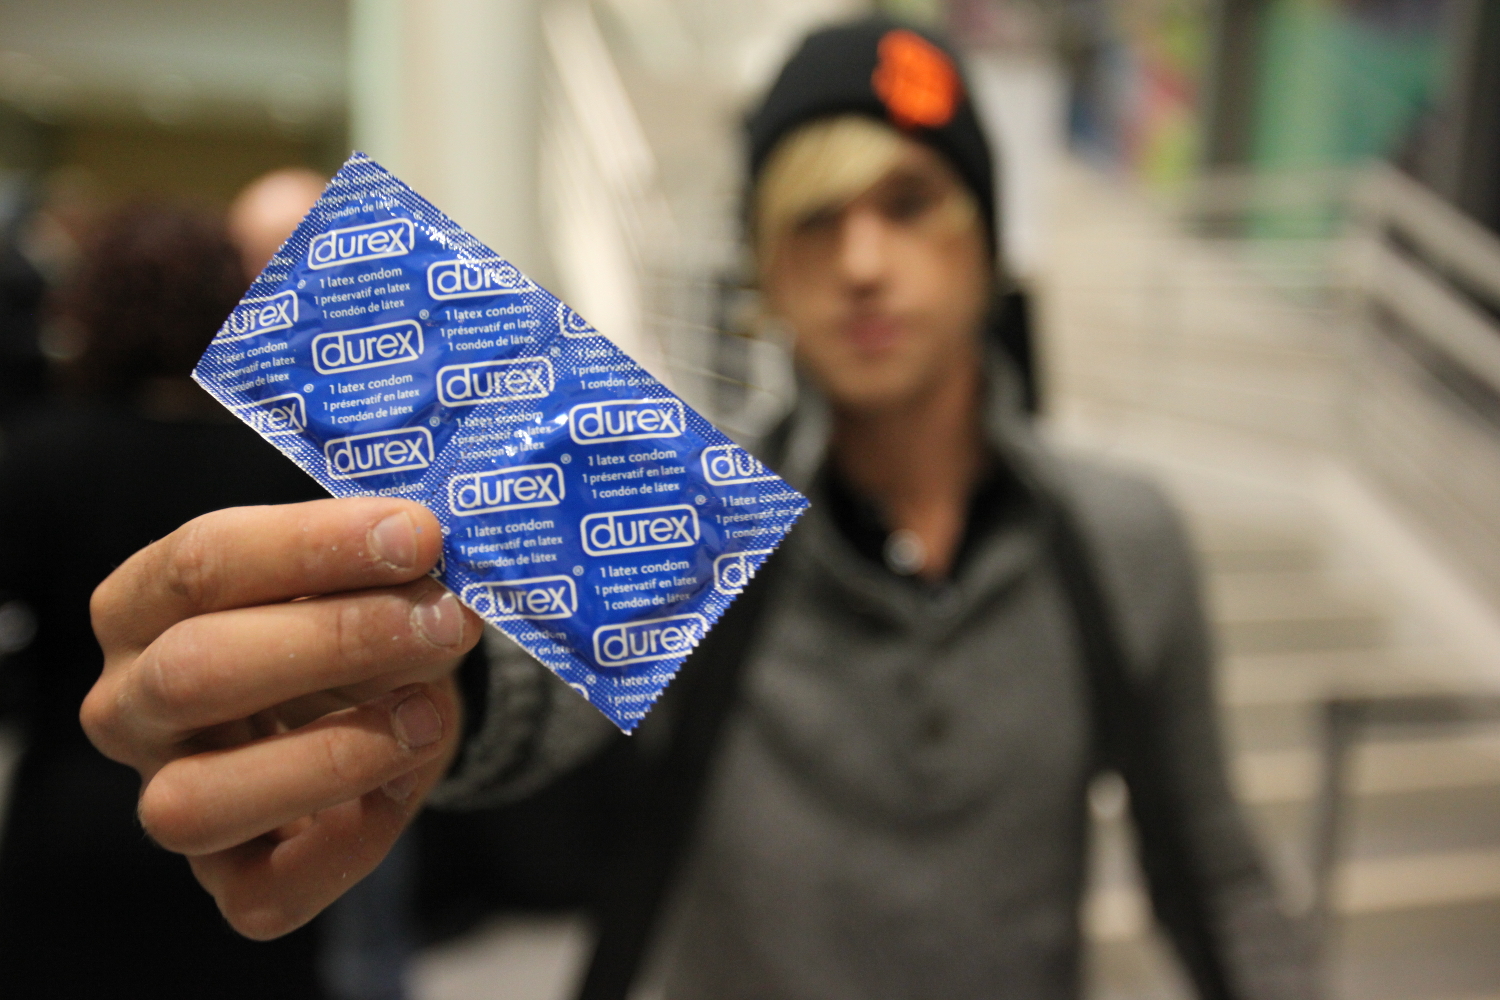 Rusia no permitirá la venta de preservativos Durex